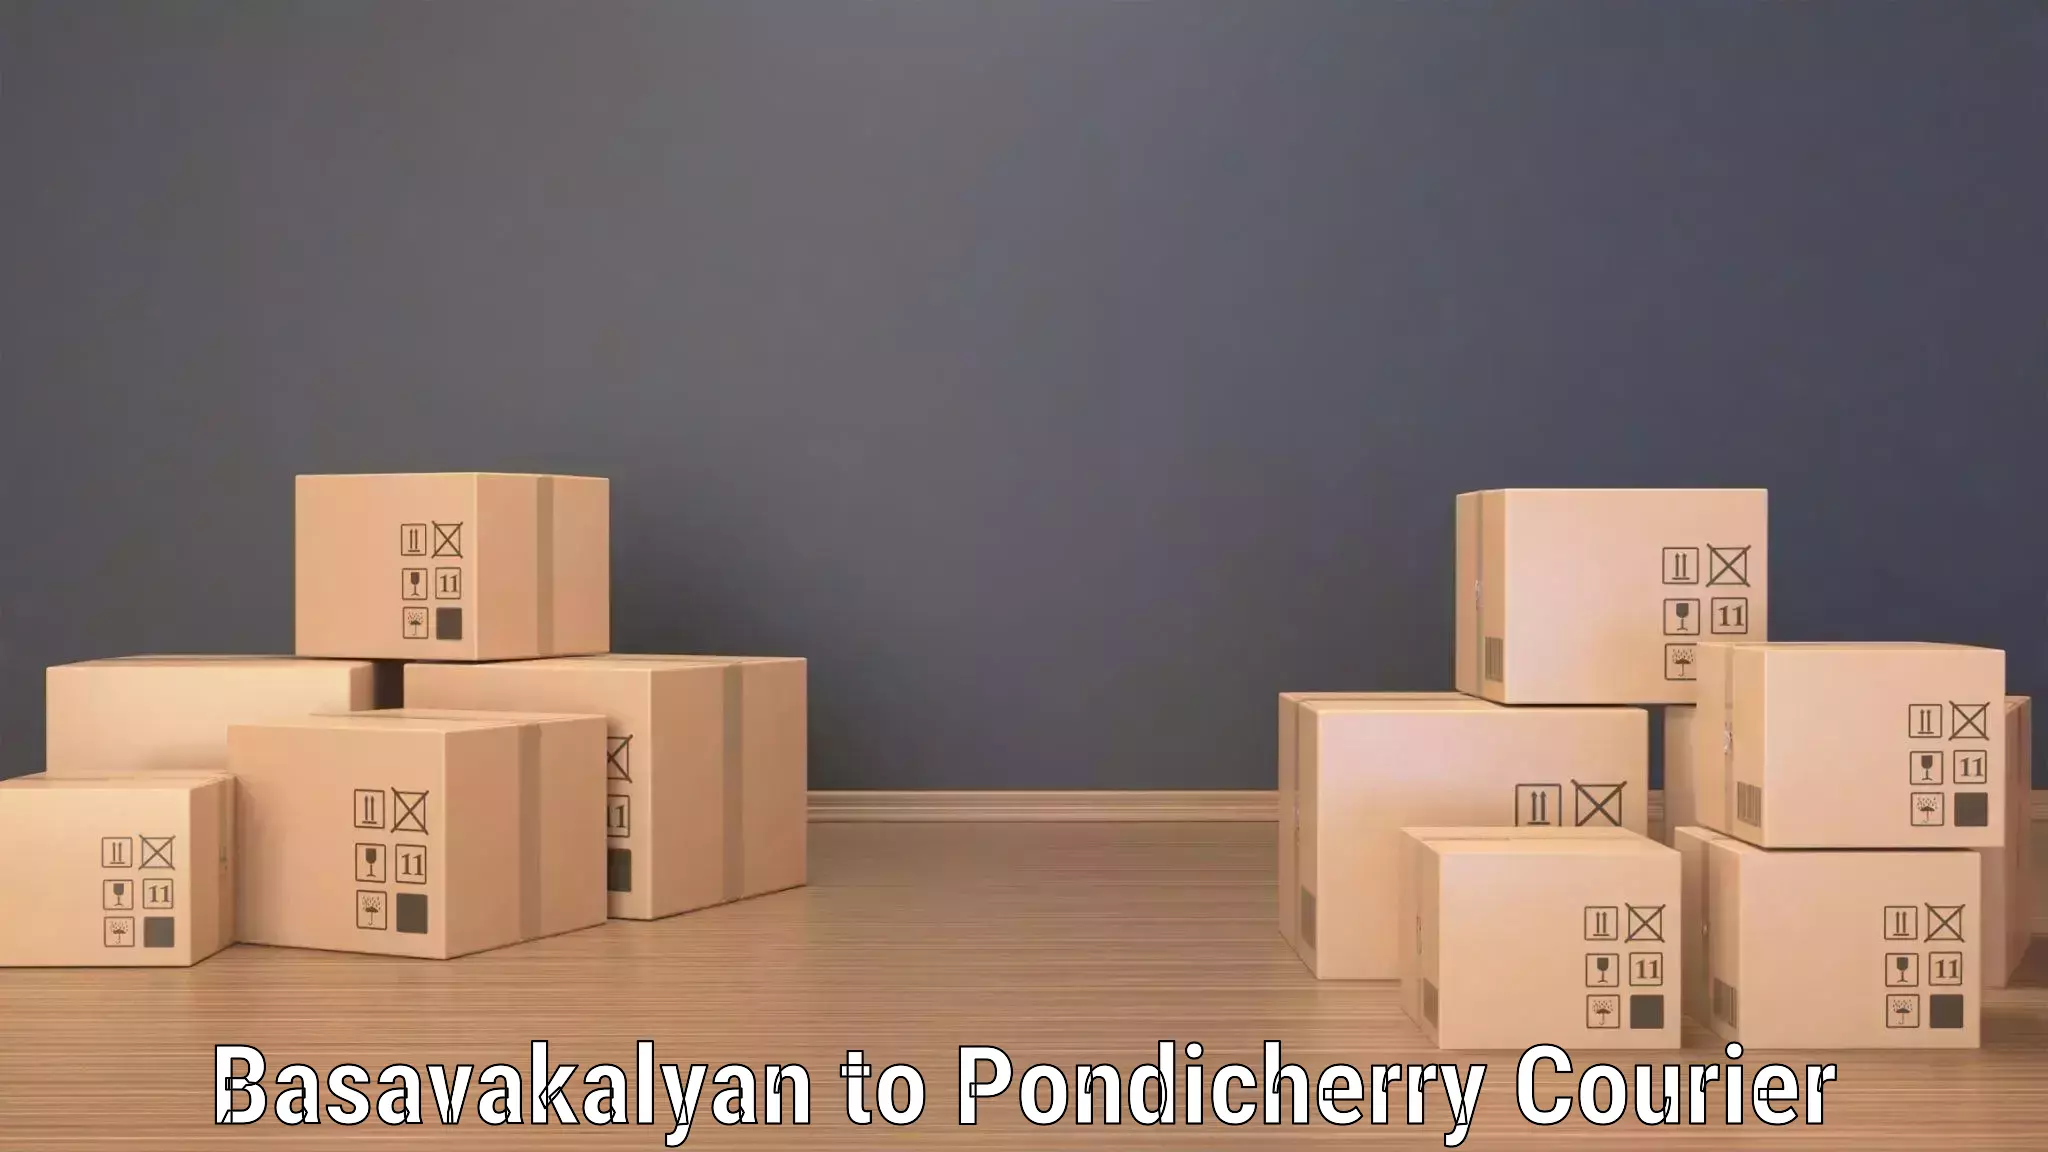 Efficient freight transportation Basavakalyan to Pondicherry